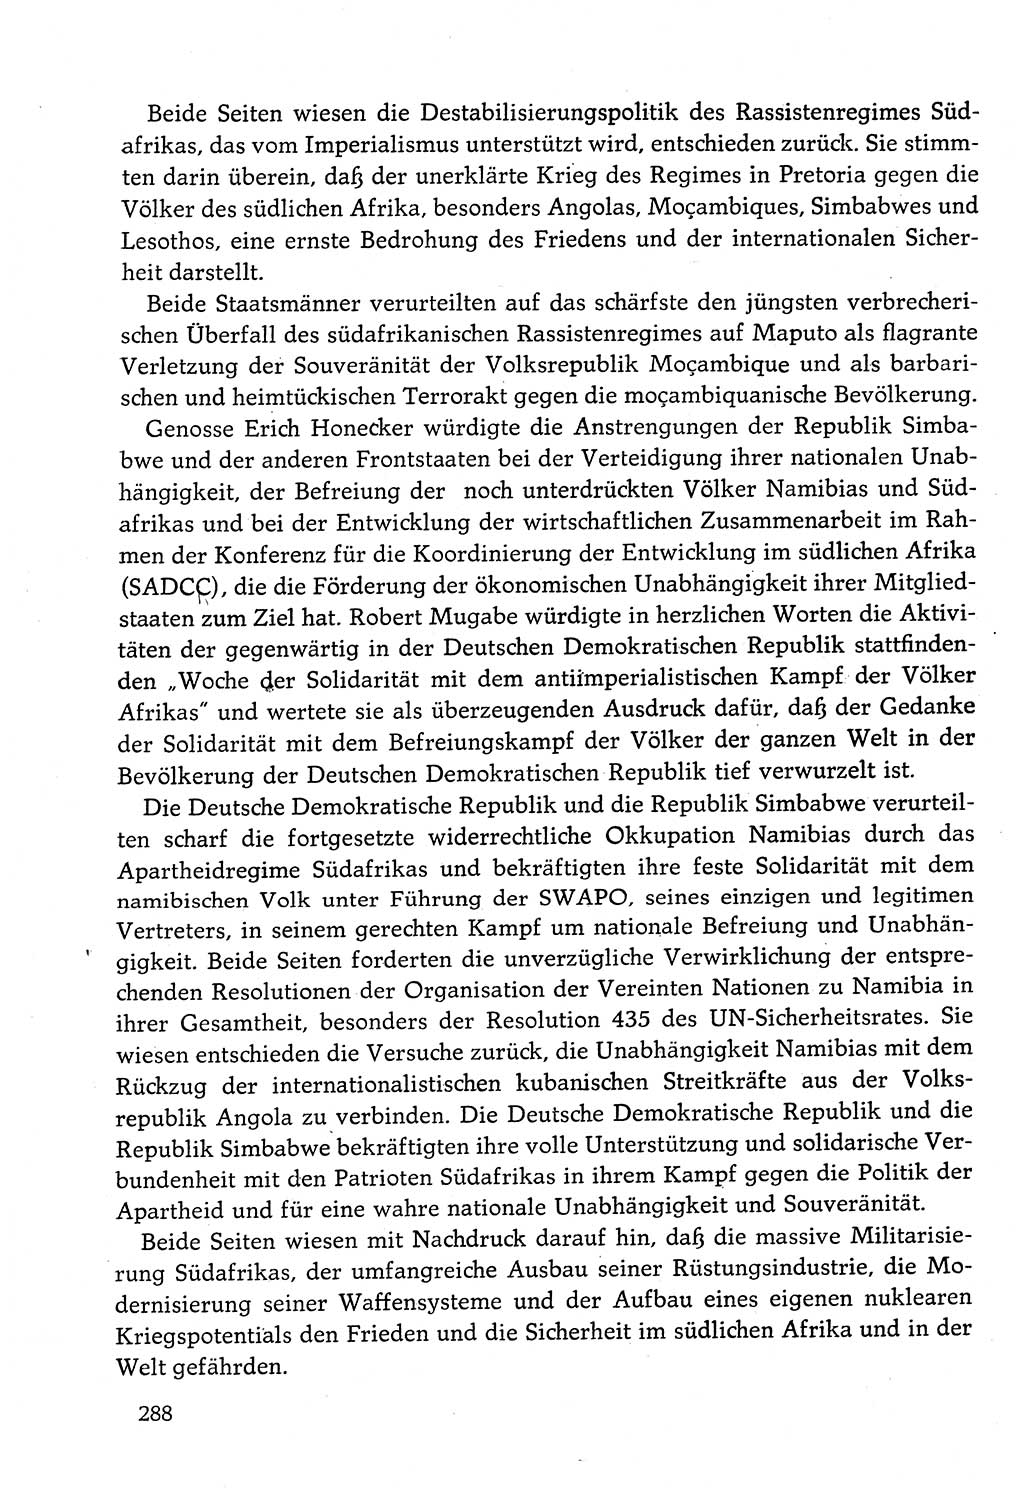 Dokumente der Sozialistischen Einheitspartei Deutschlands (SED) [Deutsche Demokratische Republik (DDR)] 1982-1983, Seite 288 (Dok. SED DDR 1982-1983, S. 288)